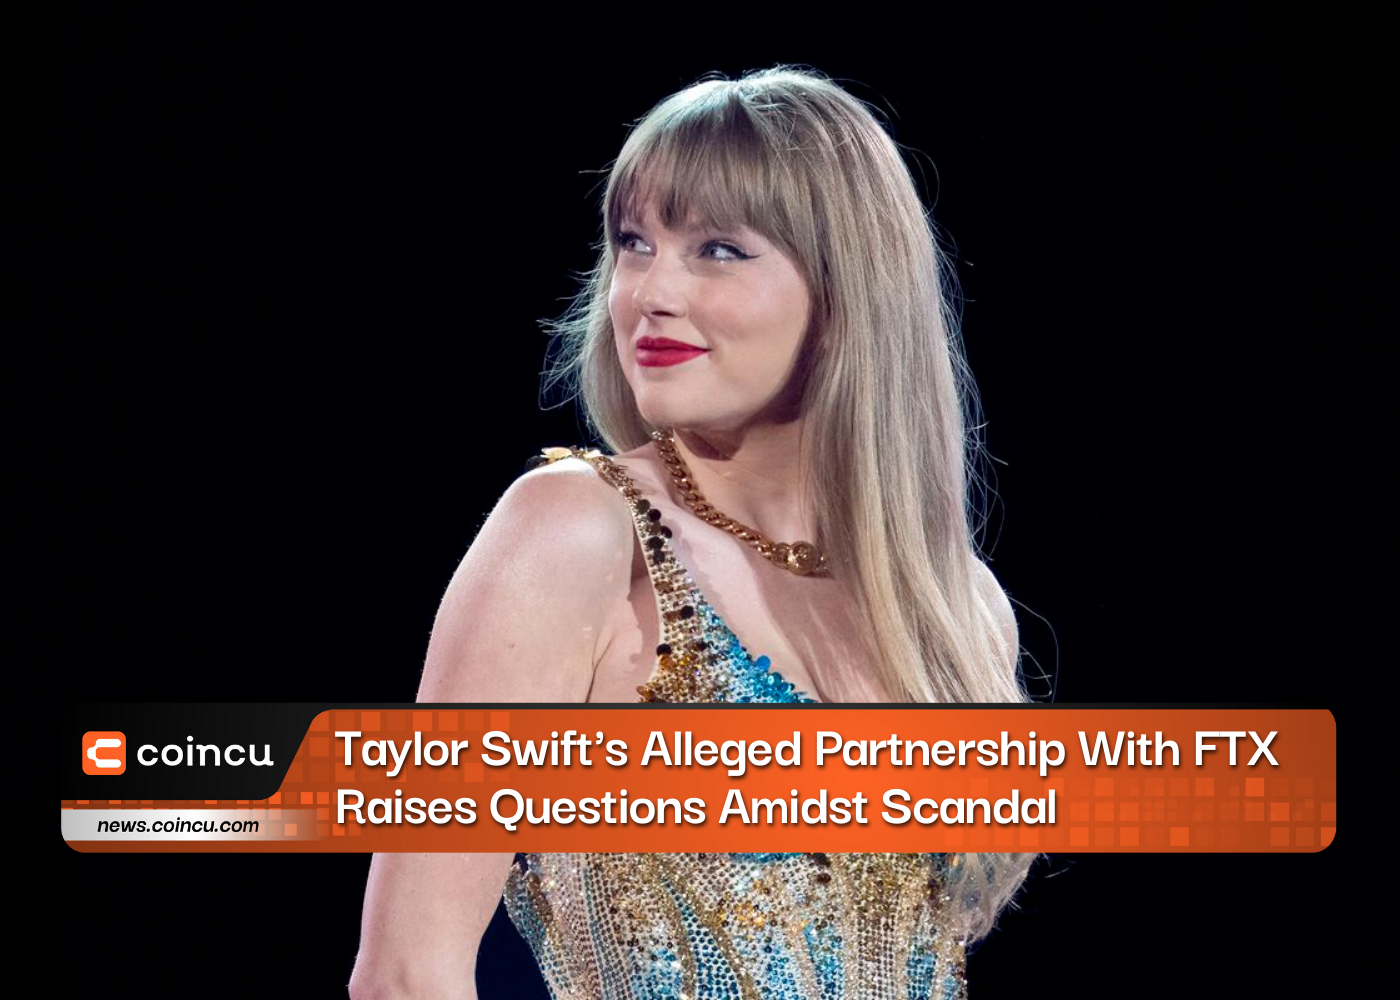 La supuesta asociación de Taylor Swift con FTX plantea preguntas en medio del escándalo